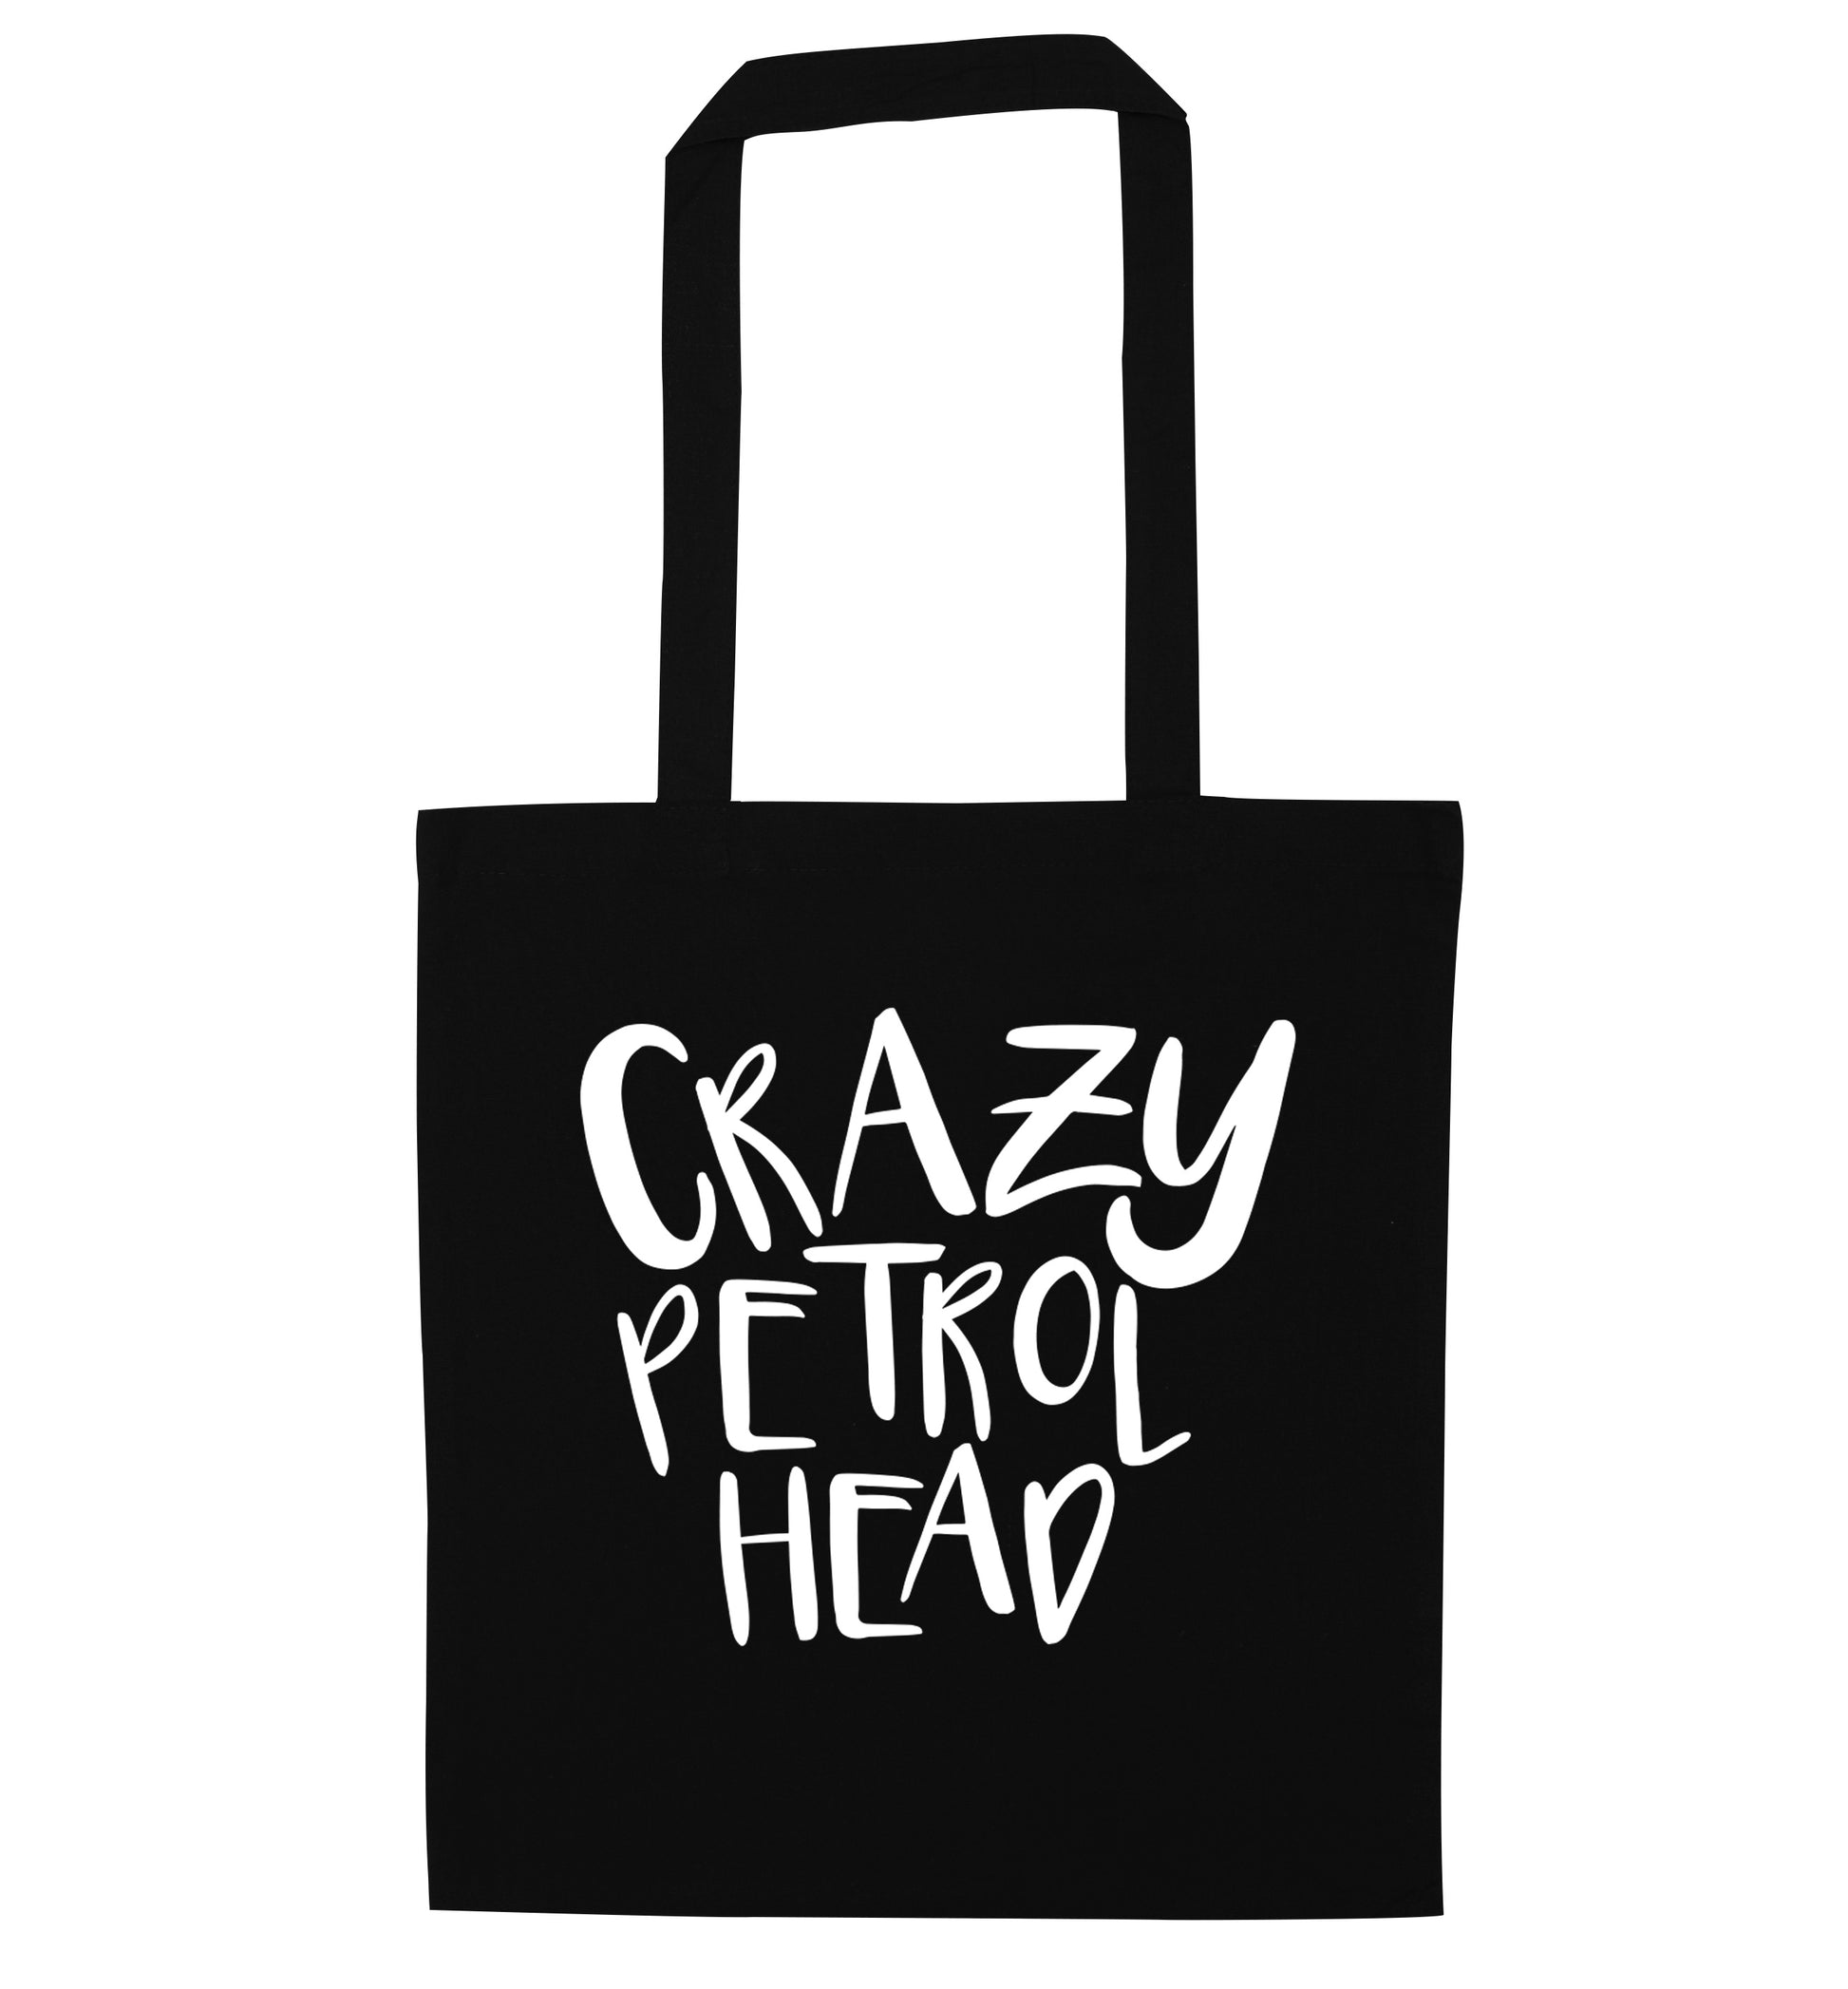 Crazy petrol head black tote bag